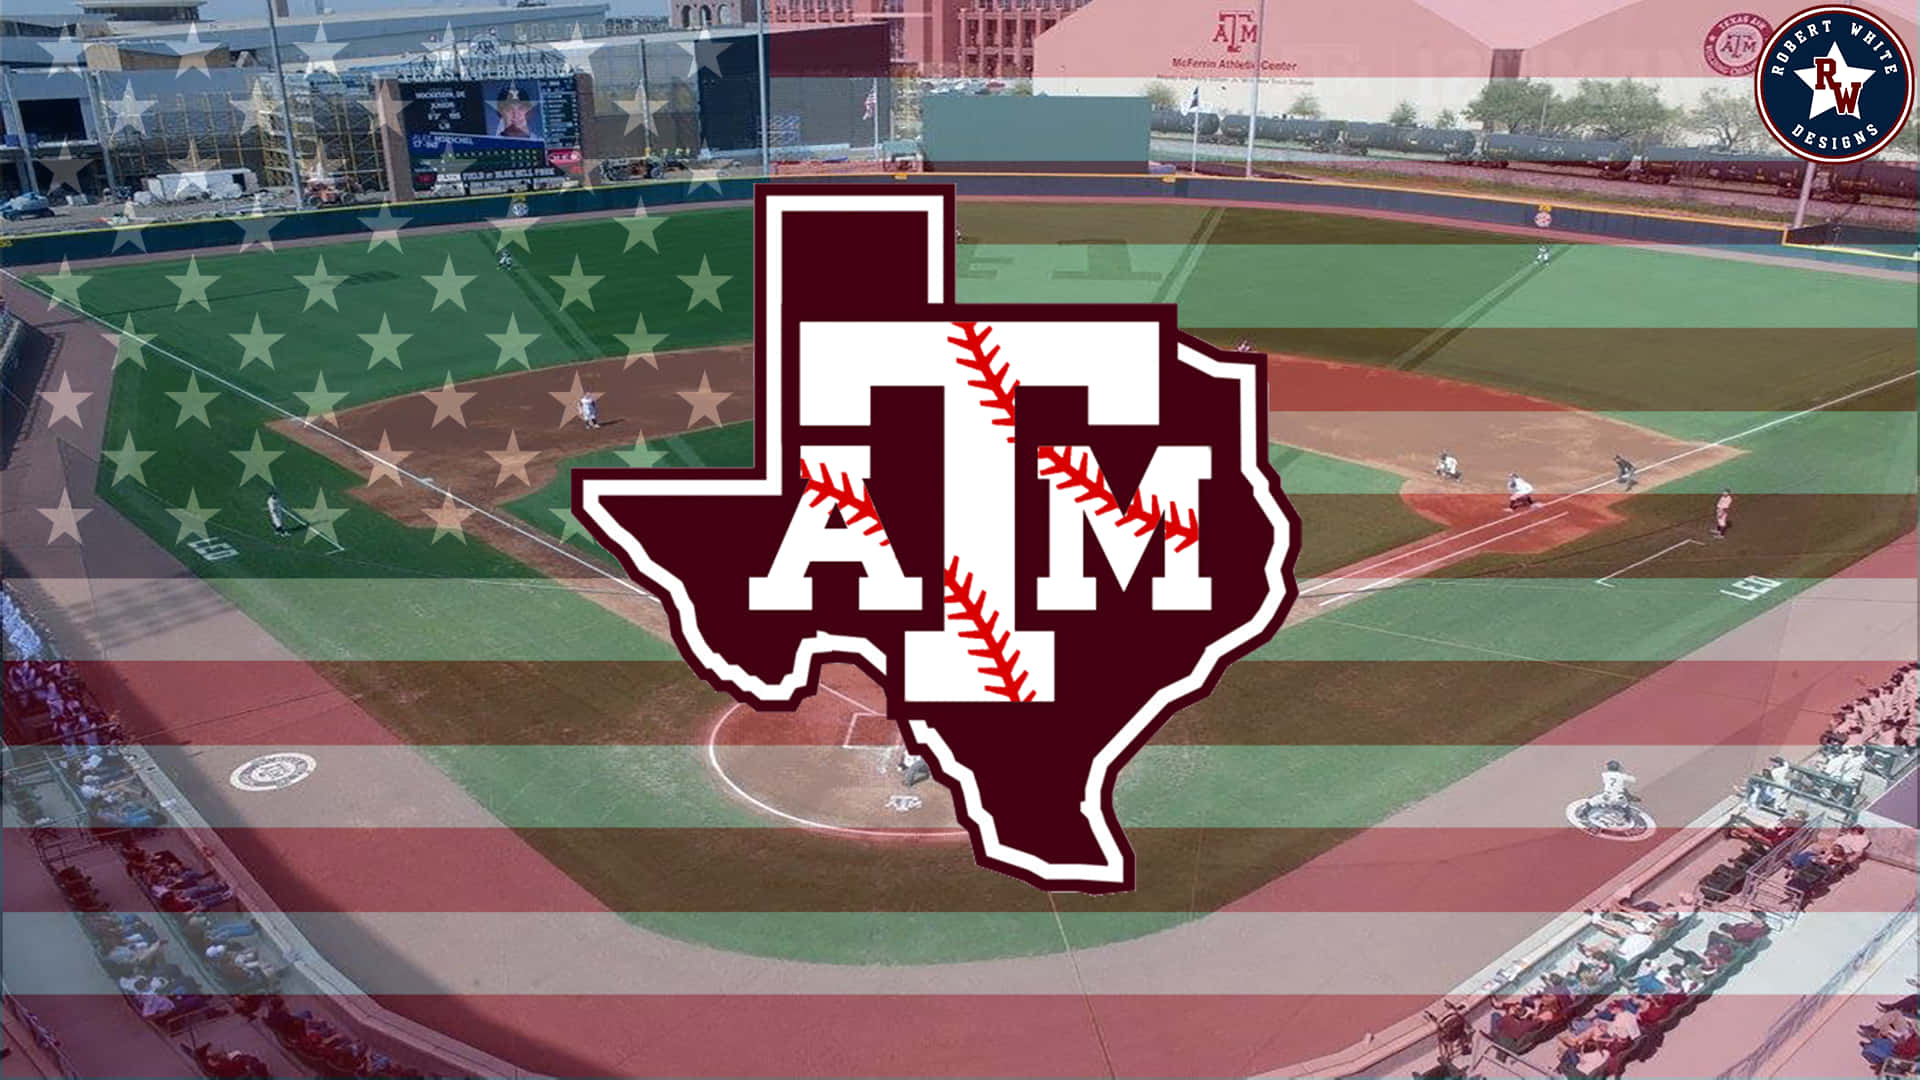 Logotipode Texas Am Baseball En Una Bandera Estadounidense. Fondo de pantalla